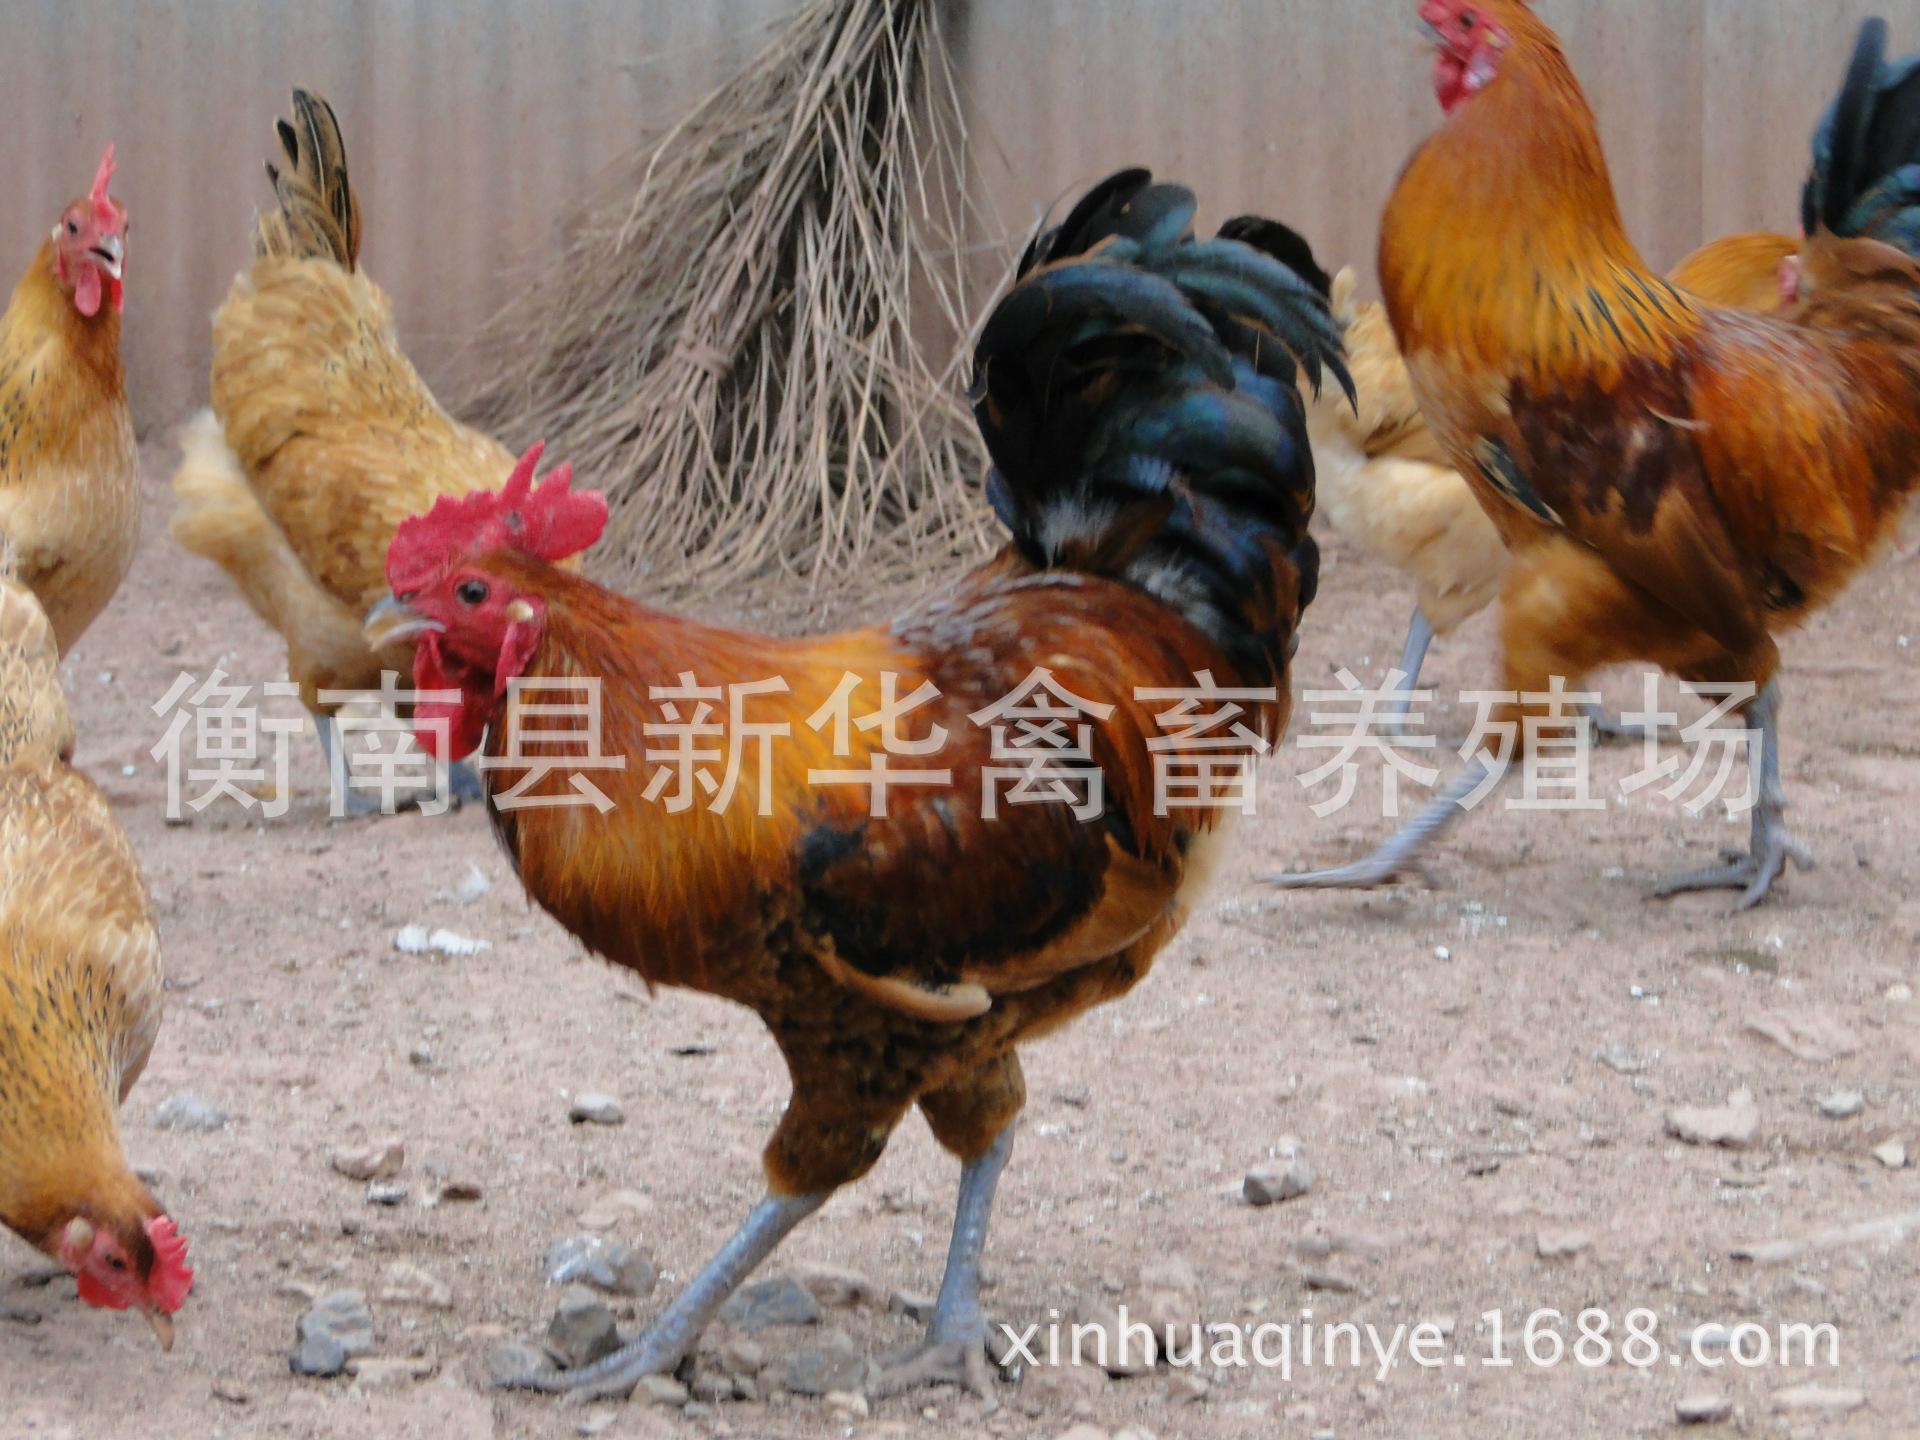 新华禽畜厂家直销正宗农家散养土鸡下单现杀包邮保鲜商品土鸡示例图6